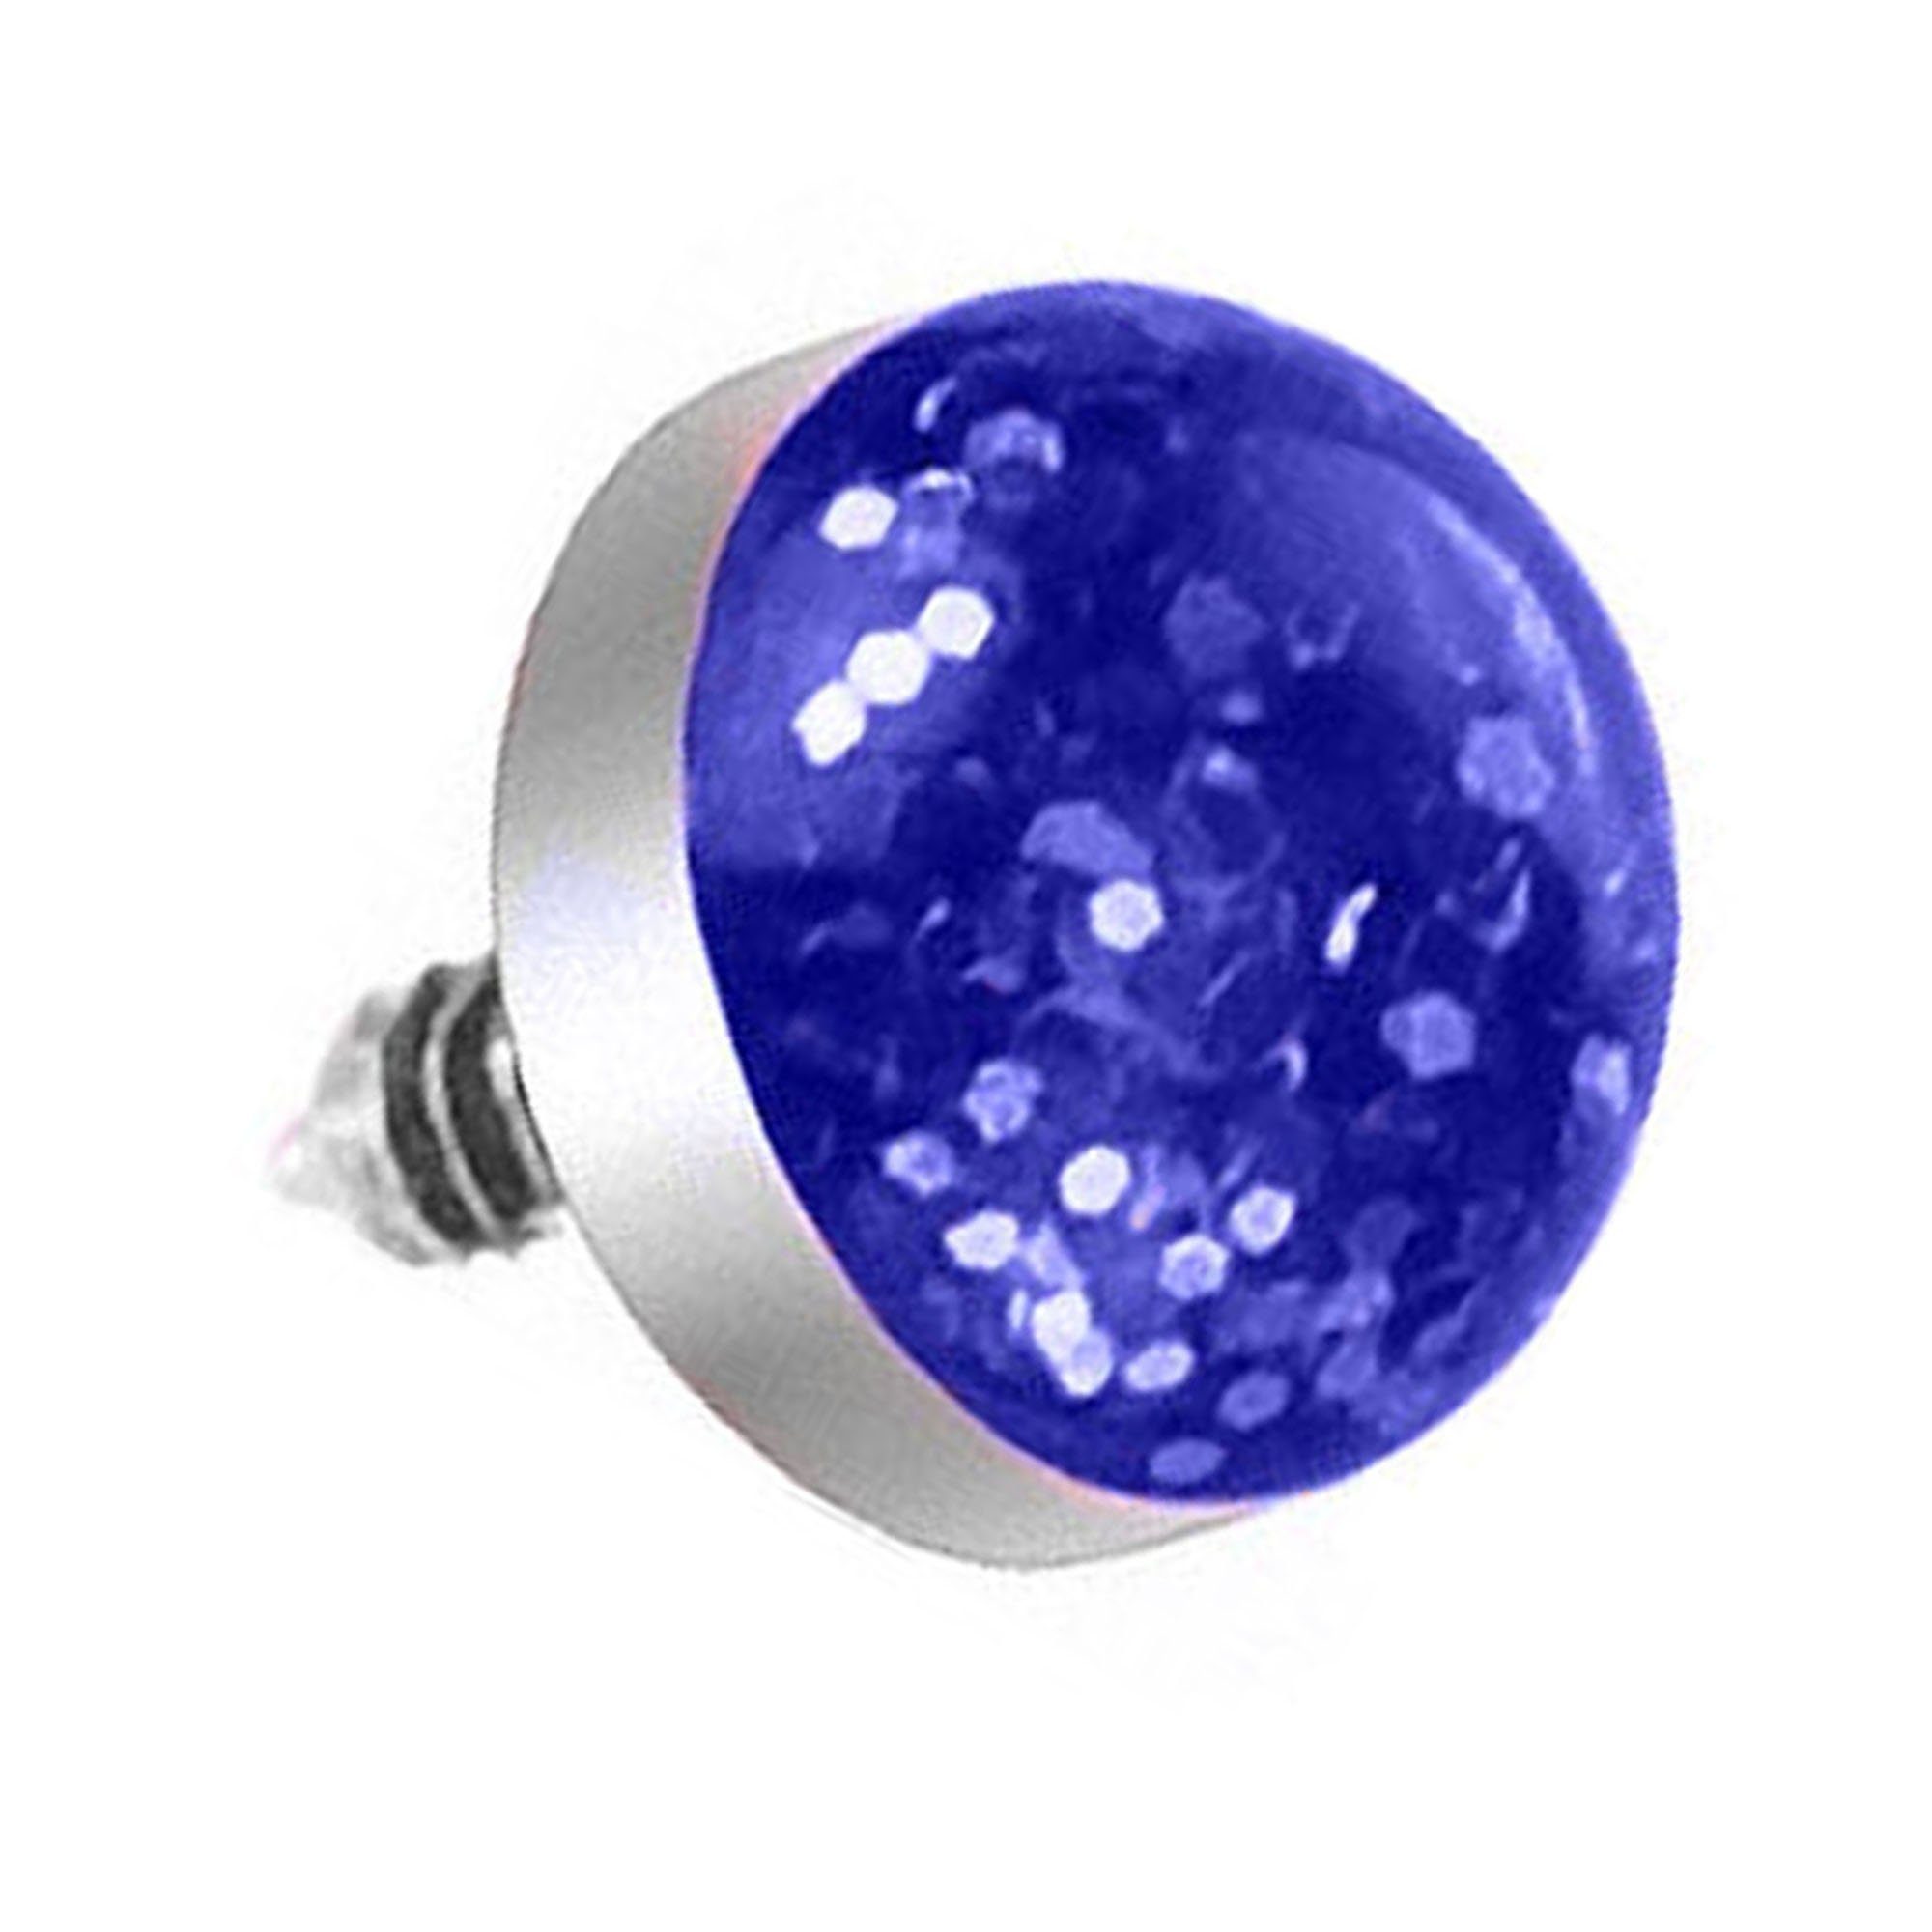 Taffstyle Skin Piercing-Implantat Stecker Perle Blau Aufsatzkugel Ball Anchor Anker Strass mit Flach Dermal Piercing mit Glitzer Kugel Kugel, Diver Aufsatz